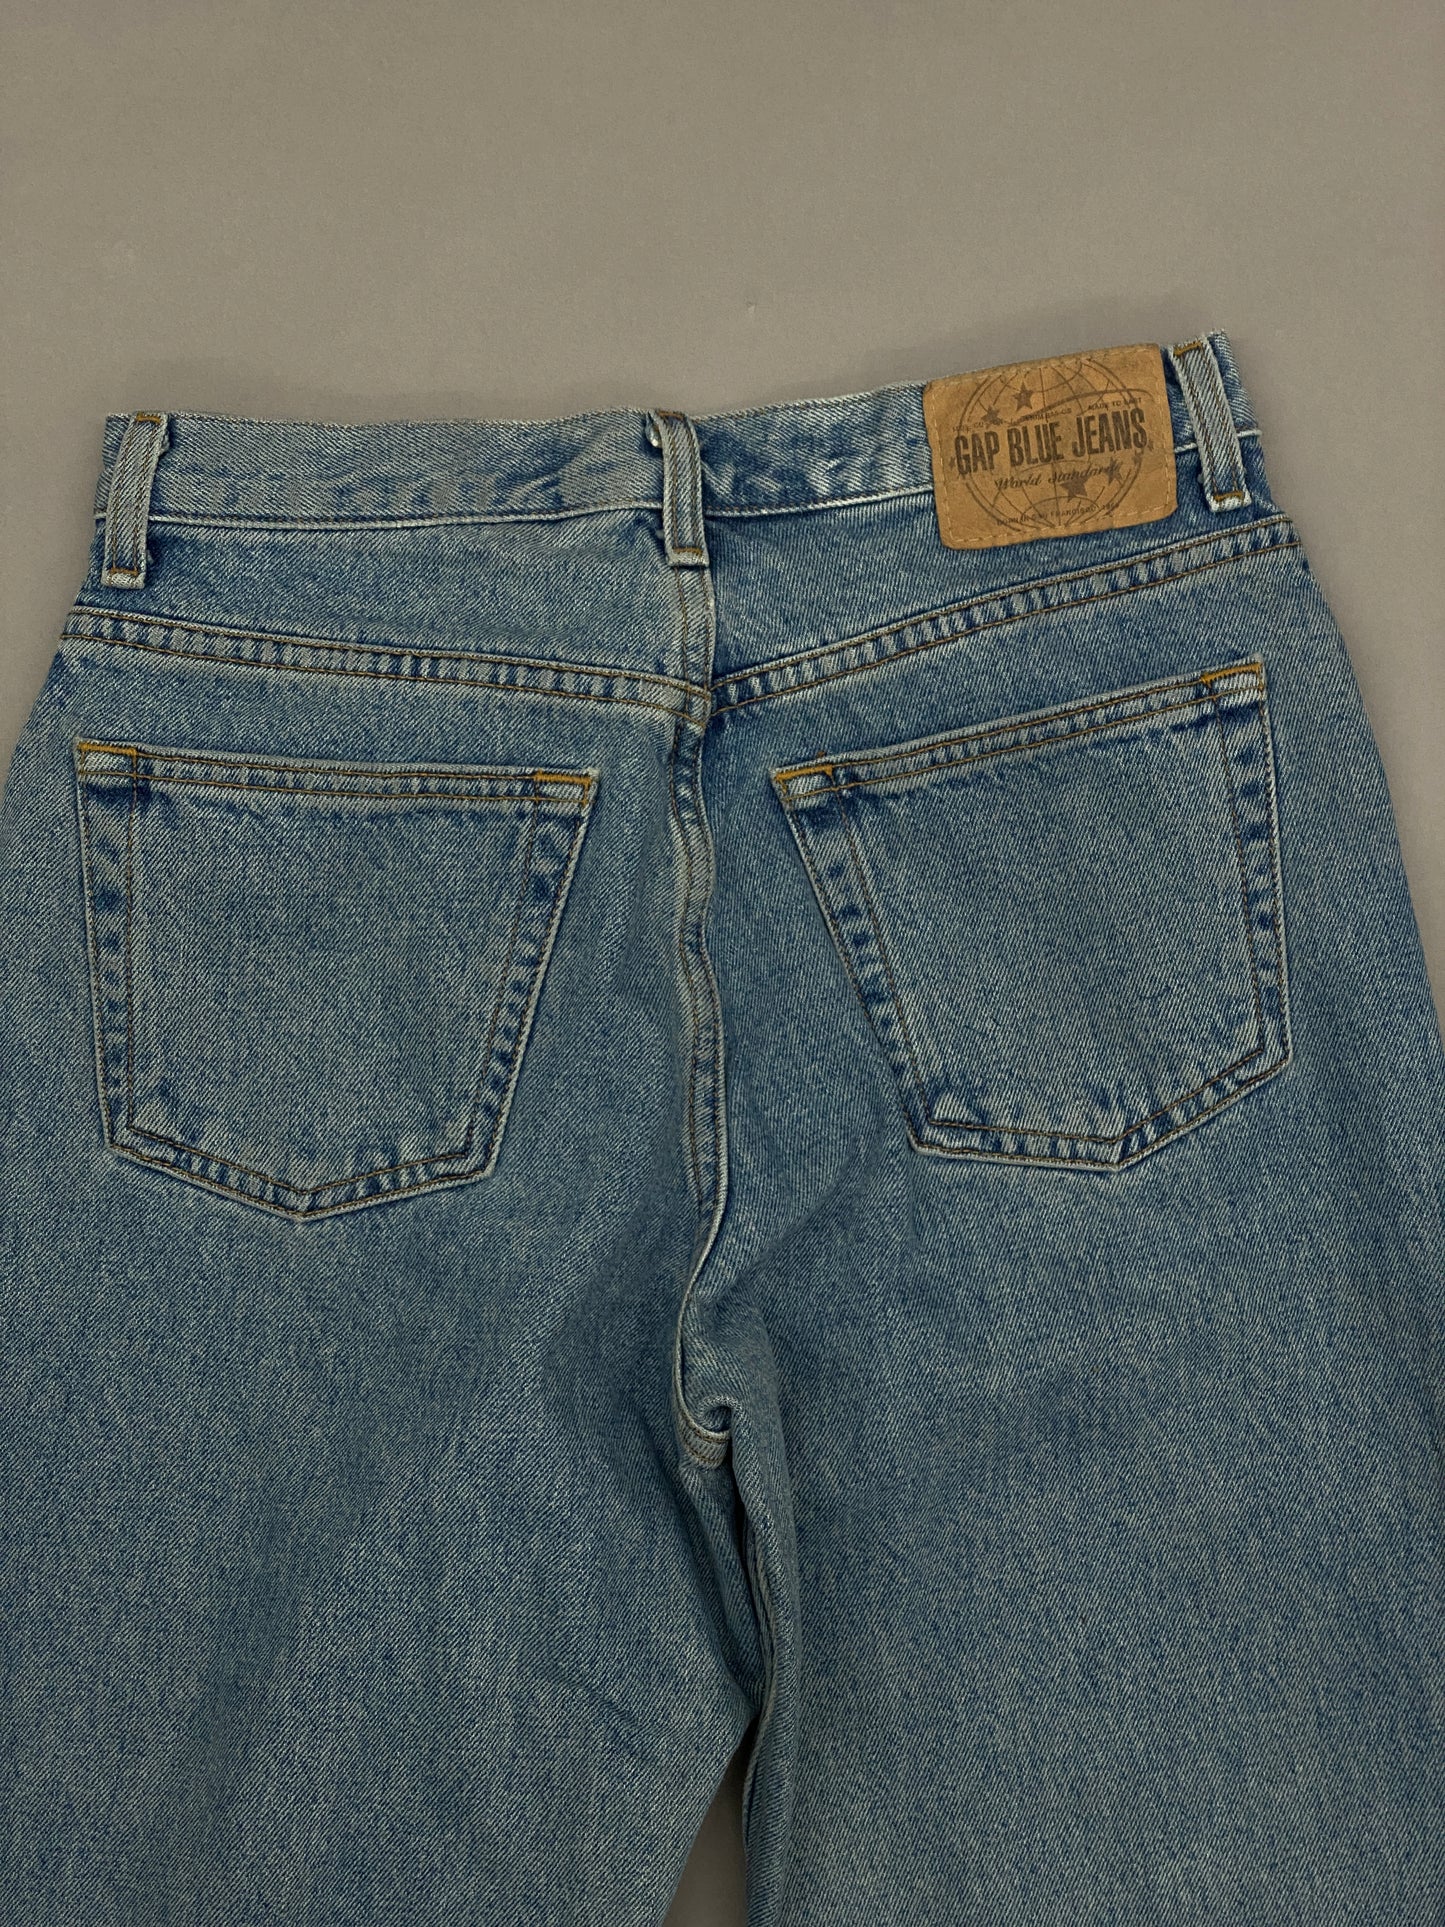 Gap Vintage Mom Jeans - 10